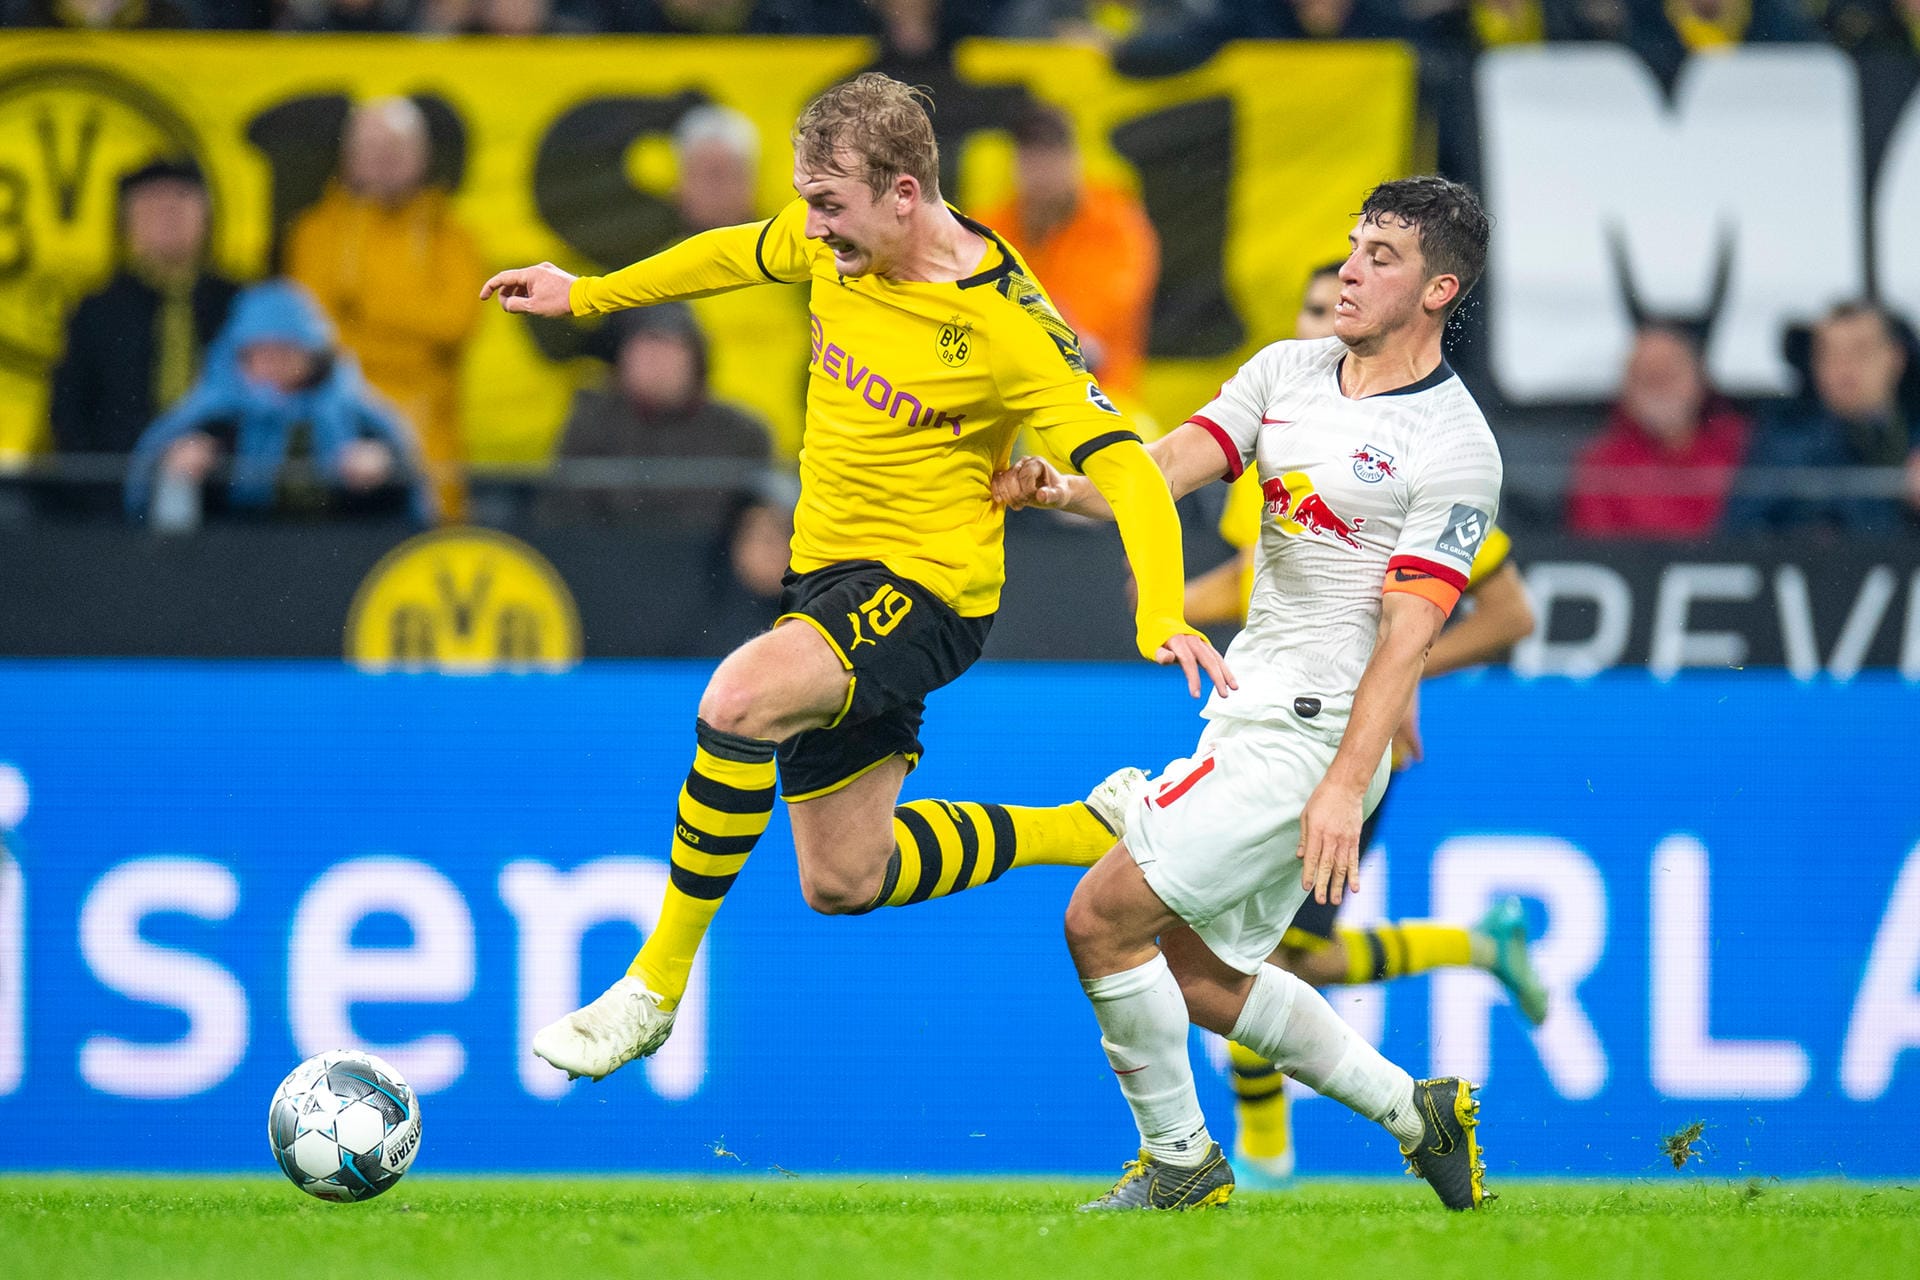 Tolle Einzelaktionen, schlimme Patzer und ein überragender Nationalstürmer: Borussia Dortmund und RB Leipzig teilen sich mit einem 3:3-Remis ganz wichtige Bundesliga-Punkte. Die besten Szenen in Bildern.